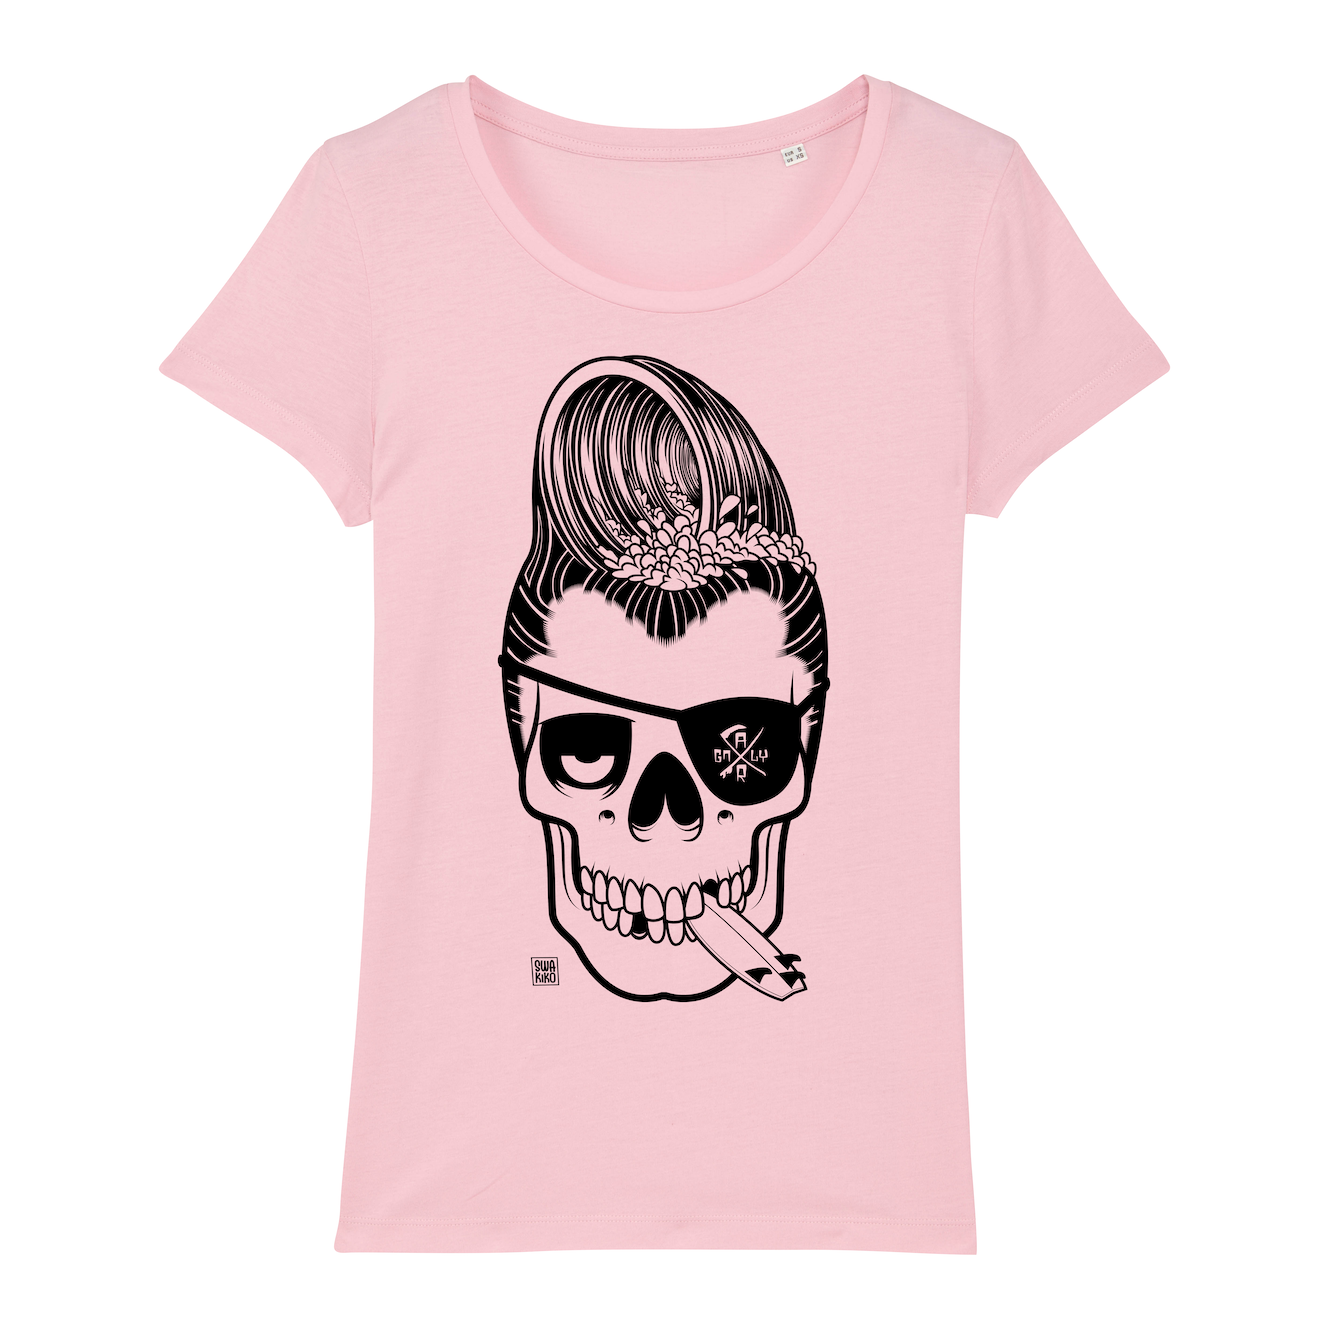 Surf t-shirt women, Haole Surfer, pink